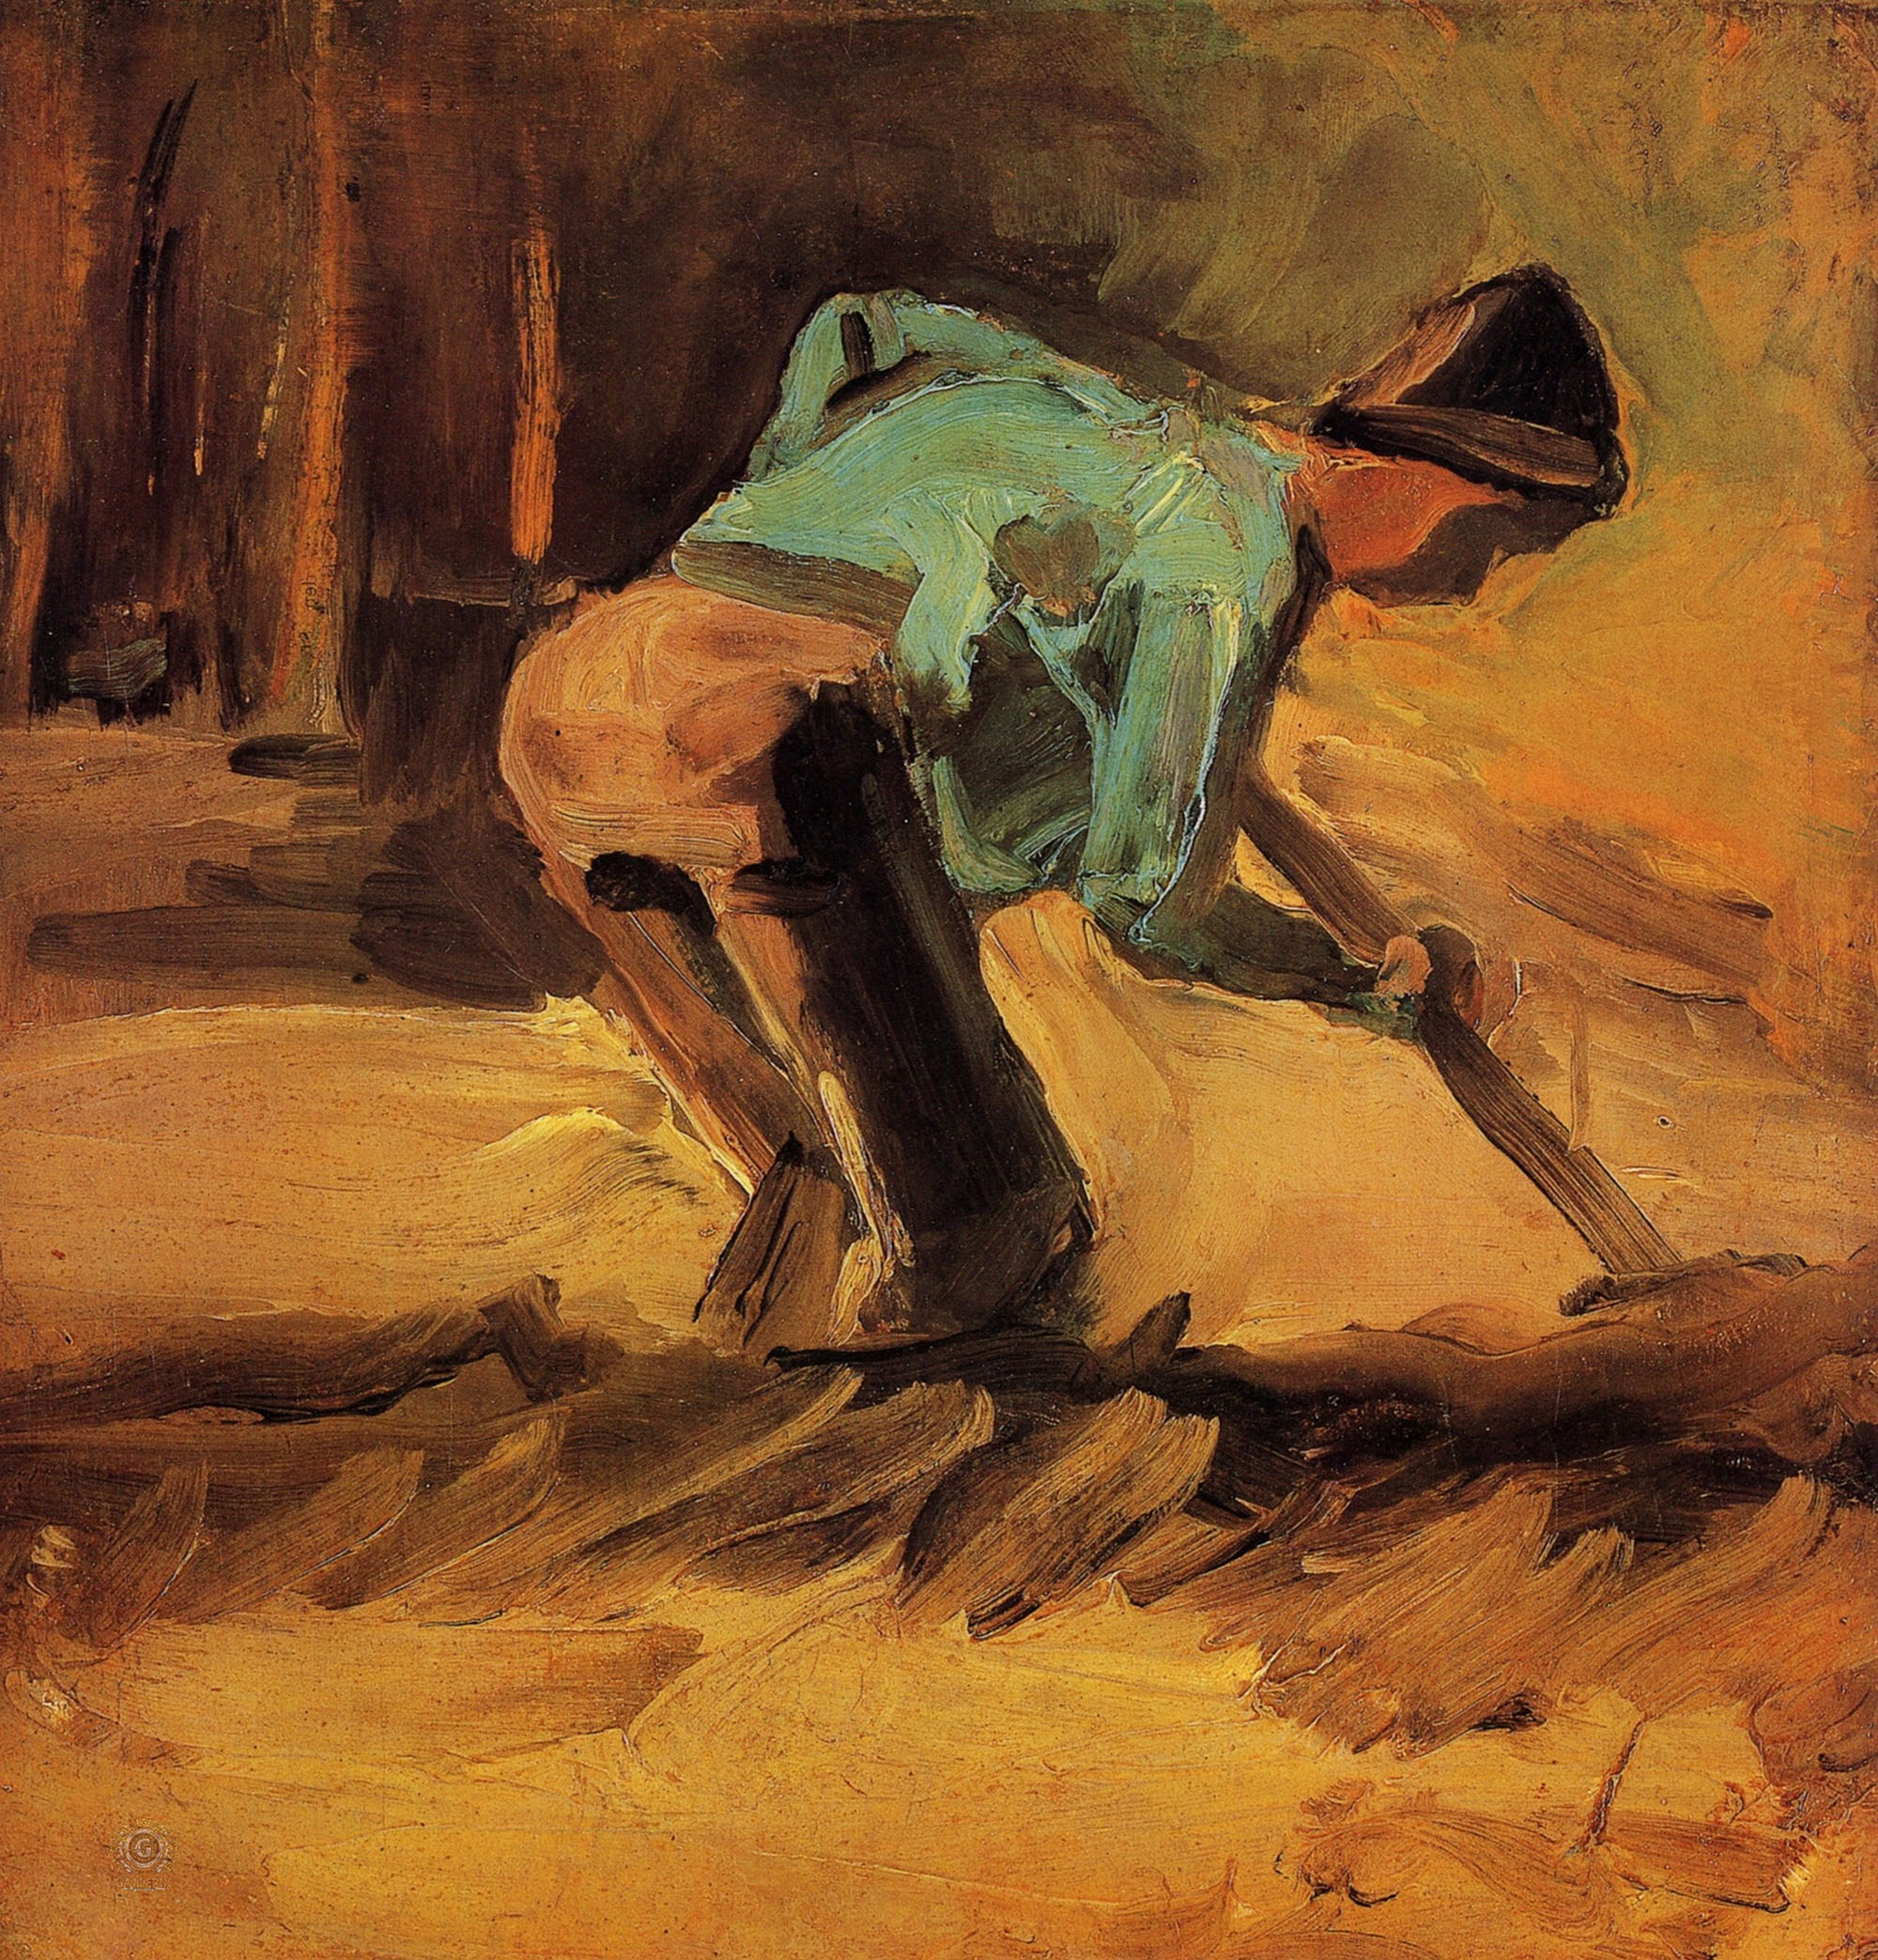 Винсент Ван Гог. "Наклонившийся мужчина с лопатой". 1882. Музей искусств Кубосо, Идзуми.